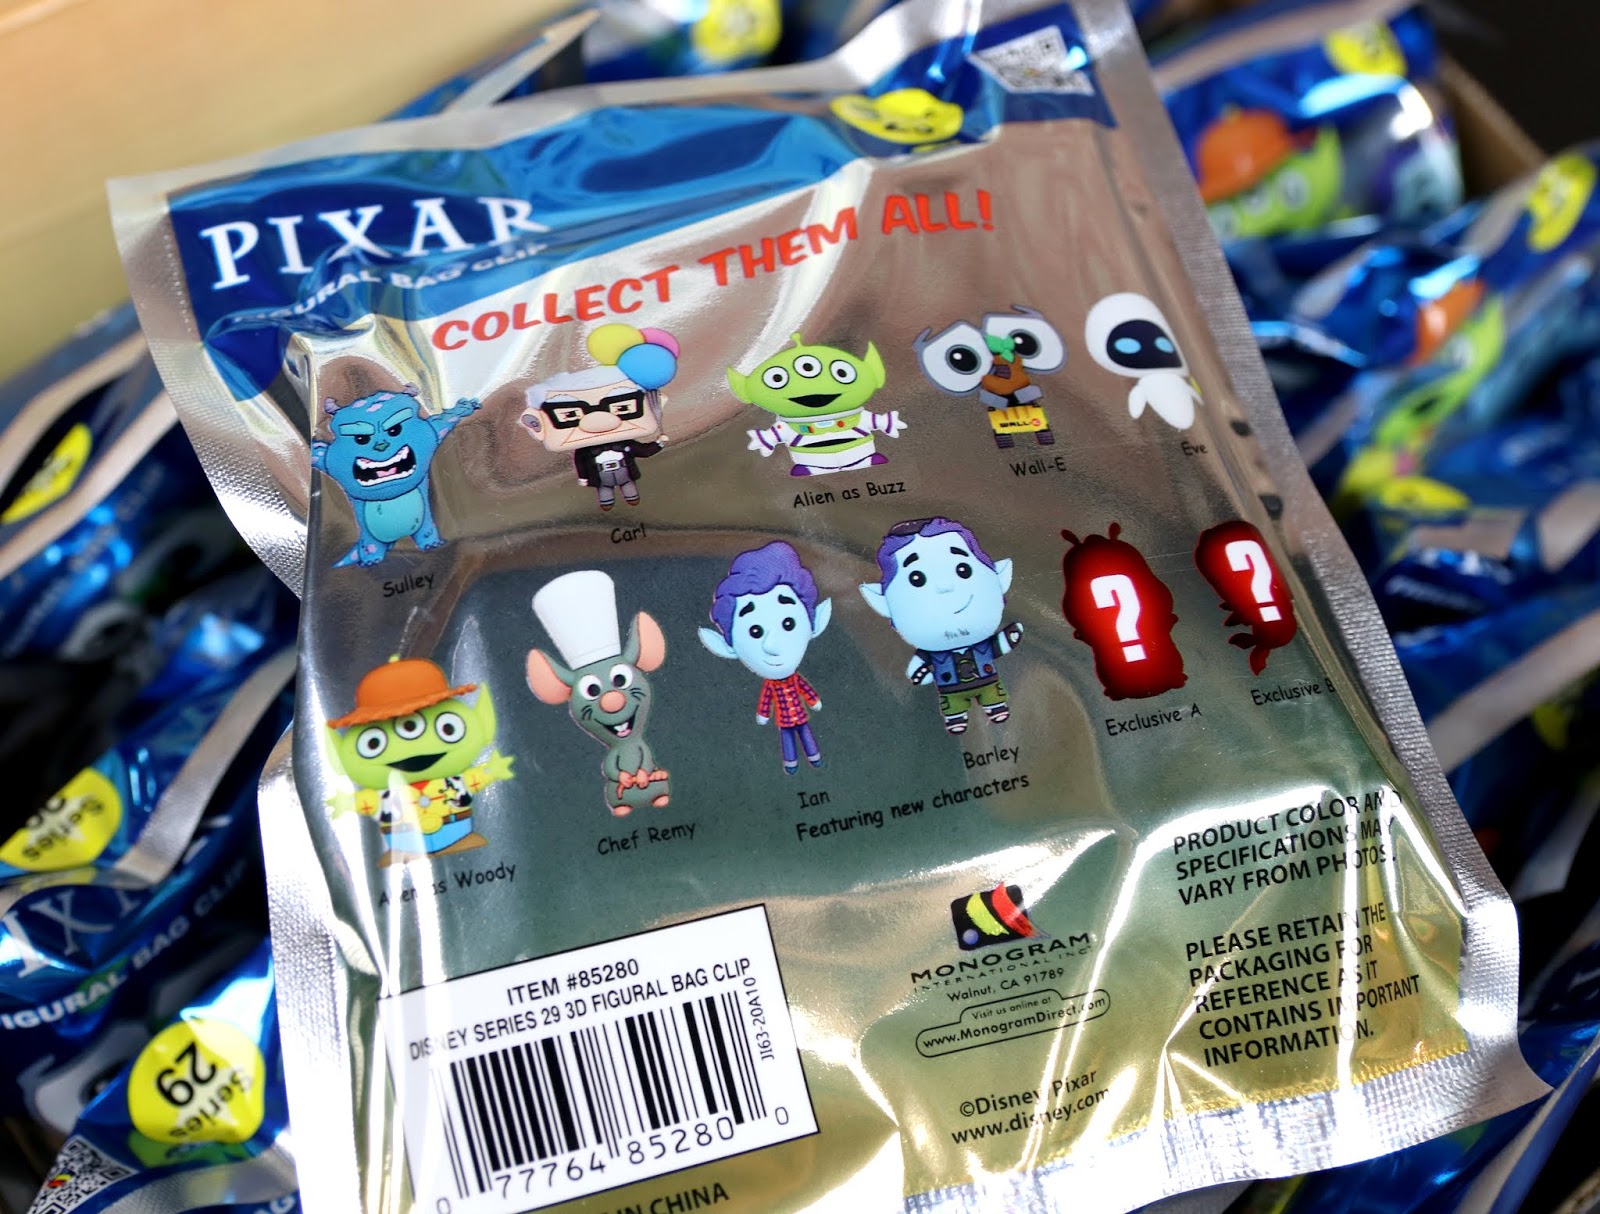 monogram figural bag clip blind bags pixar series 